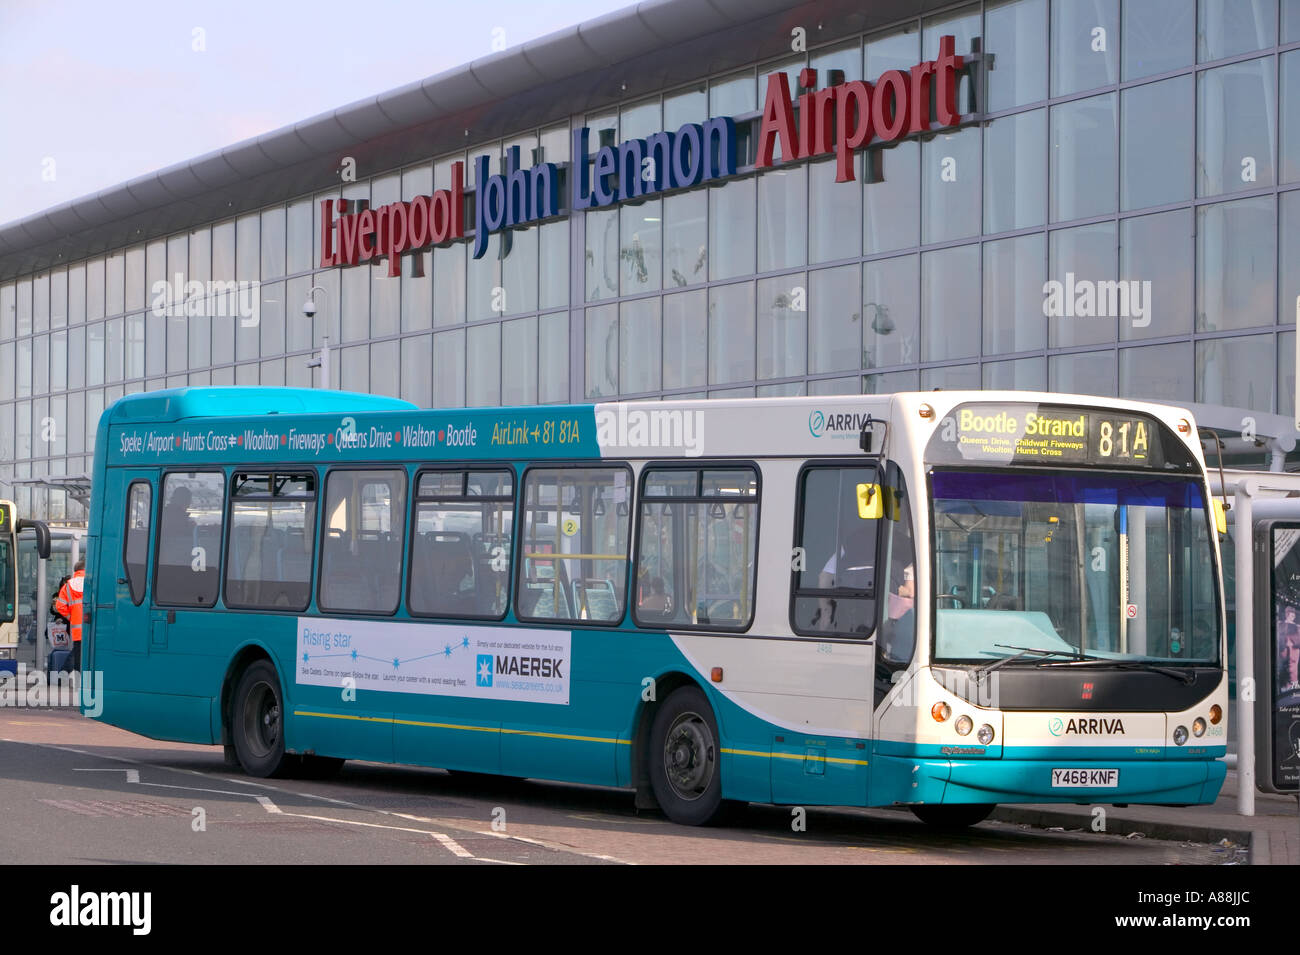 aa bus outside John Lennon airport, Liverpool, England Stock Photo